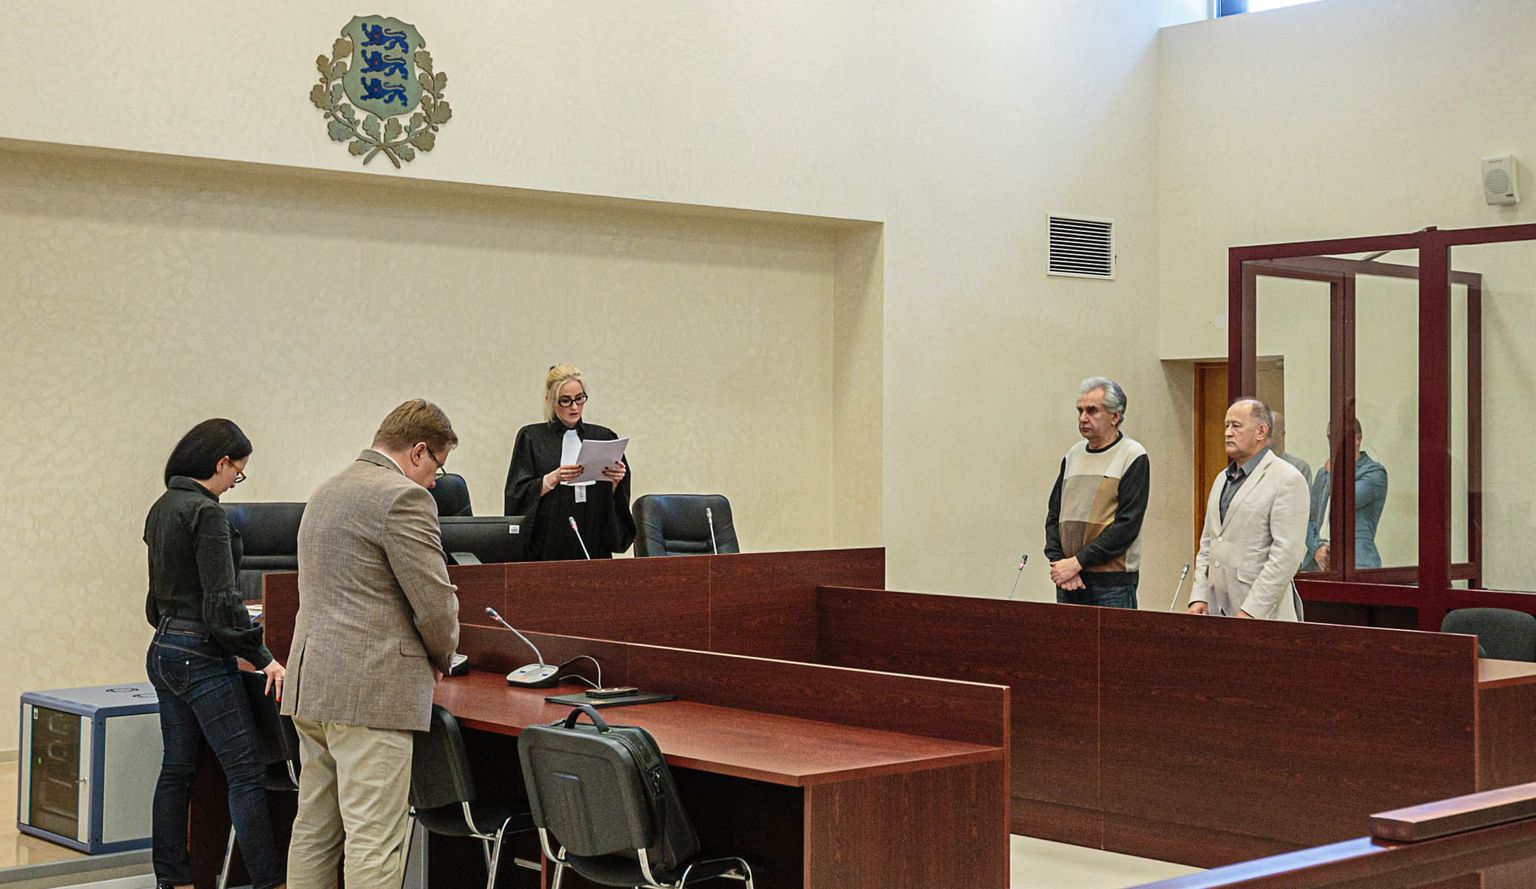 Вируский уездный суд 4 июня приговорил влиятельного нарвского политика Алексея Воронова за коррупционные преступления к лишению свободы на срок 4 года 6 месяцев, из которых год ему придется реально провести в тюрьме.